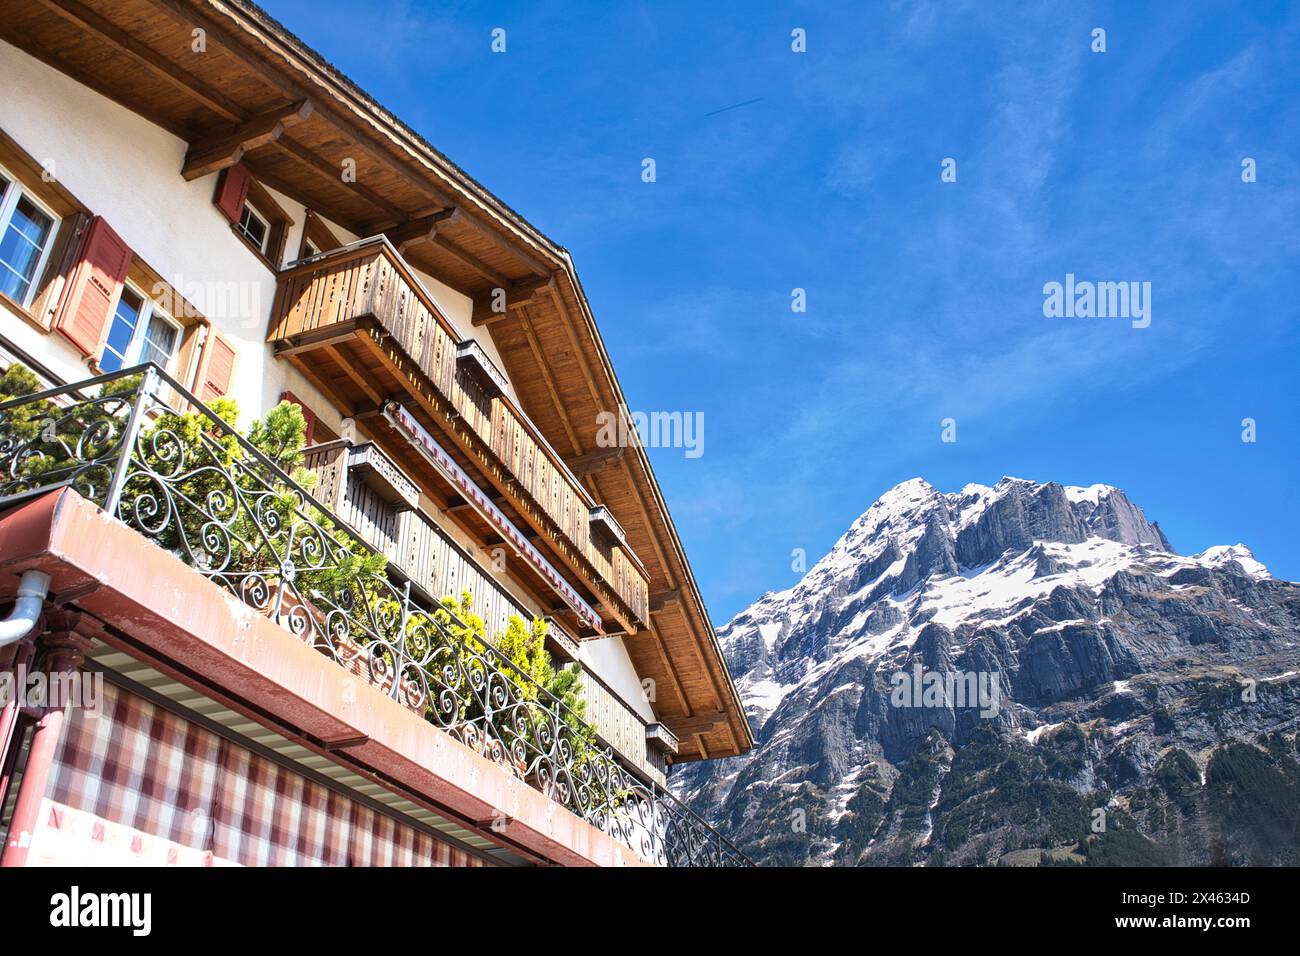 Chalet svizzero con l'Eiger sullo sfondo, Grindelwald, Svizzera Foto Stock